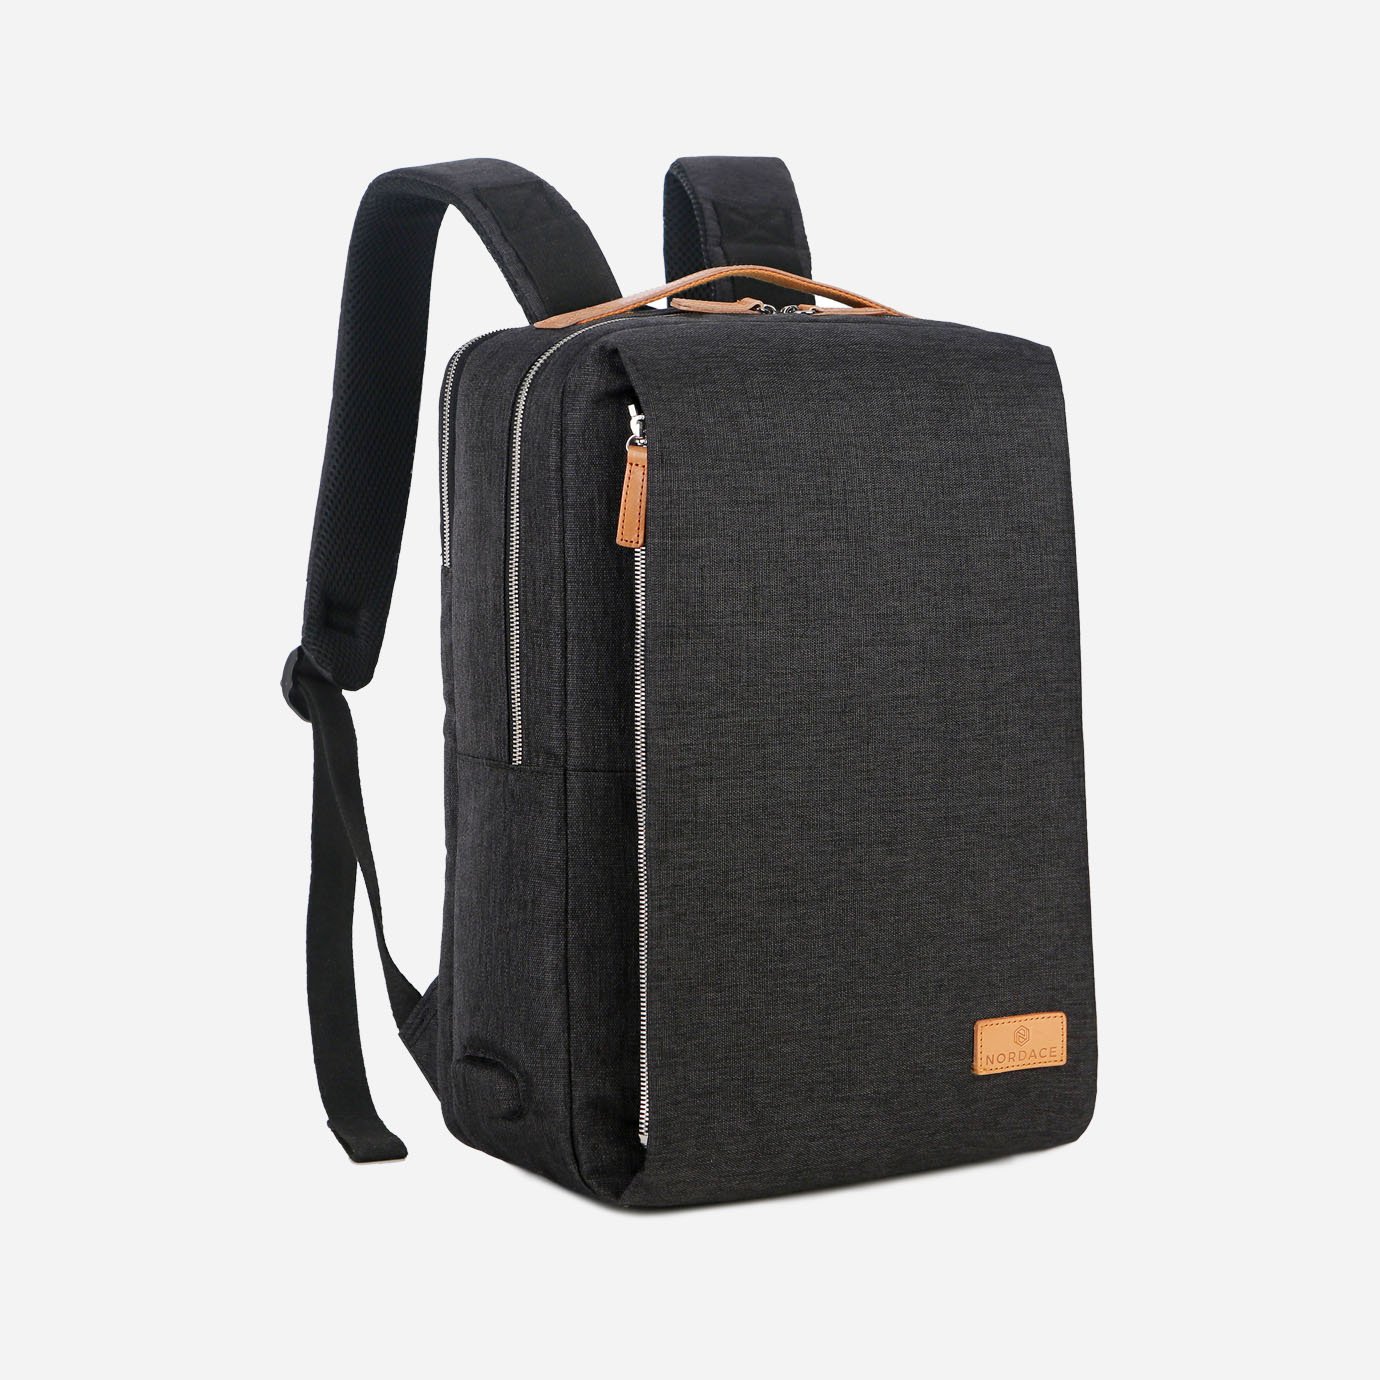 nordace siena smart backpack